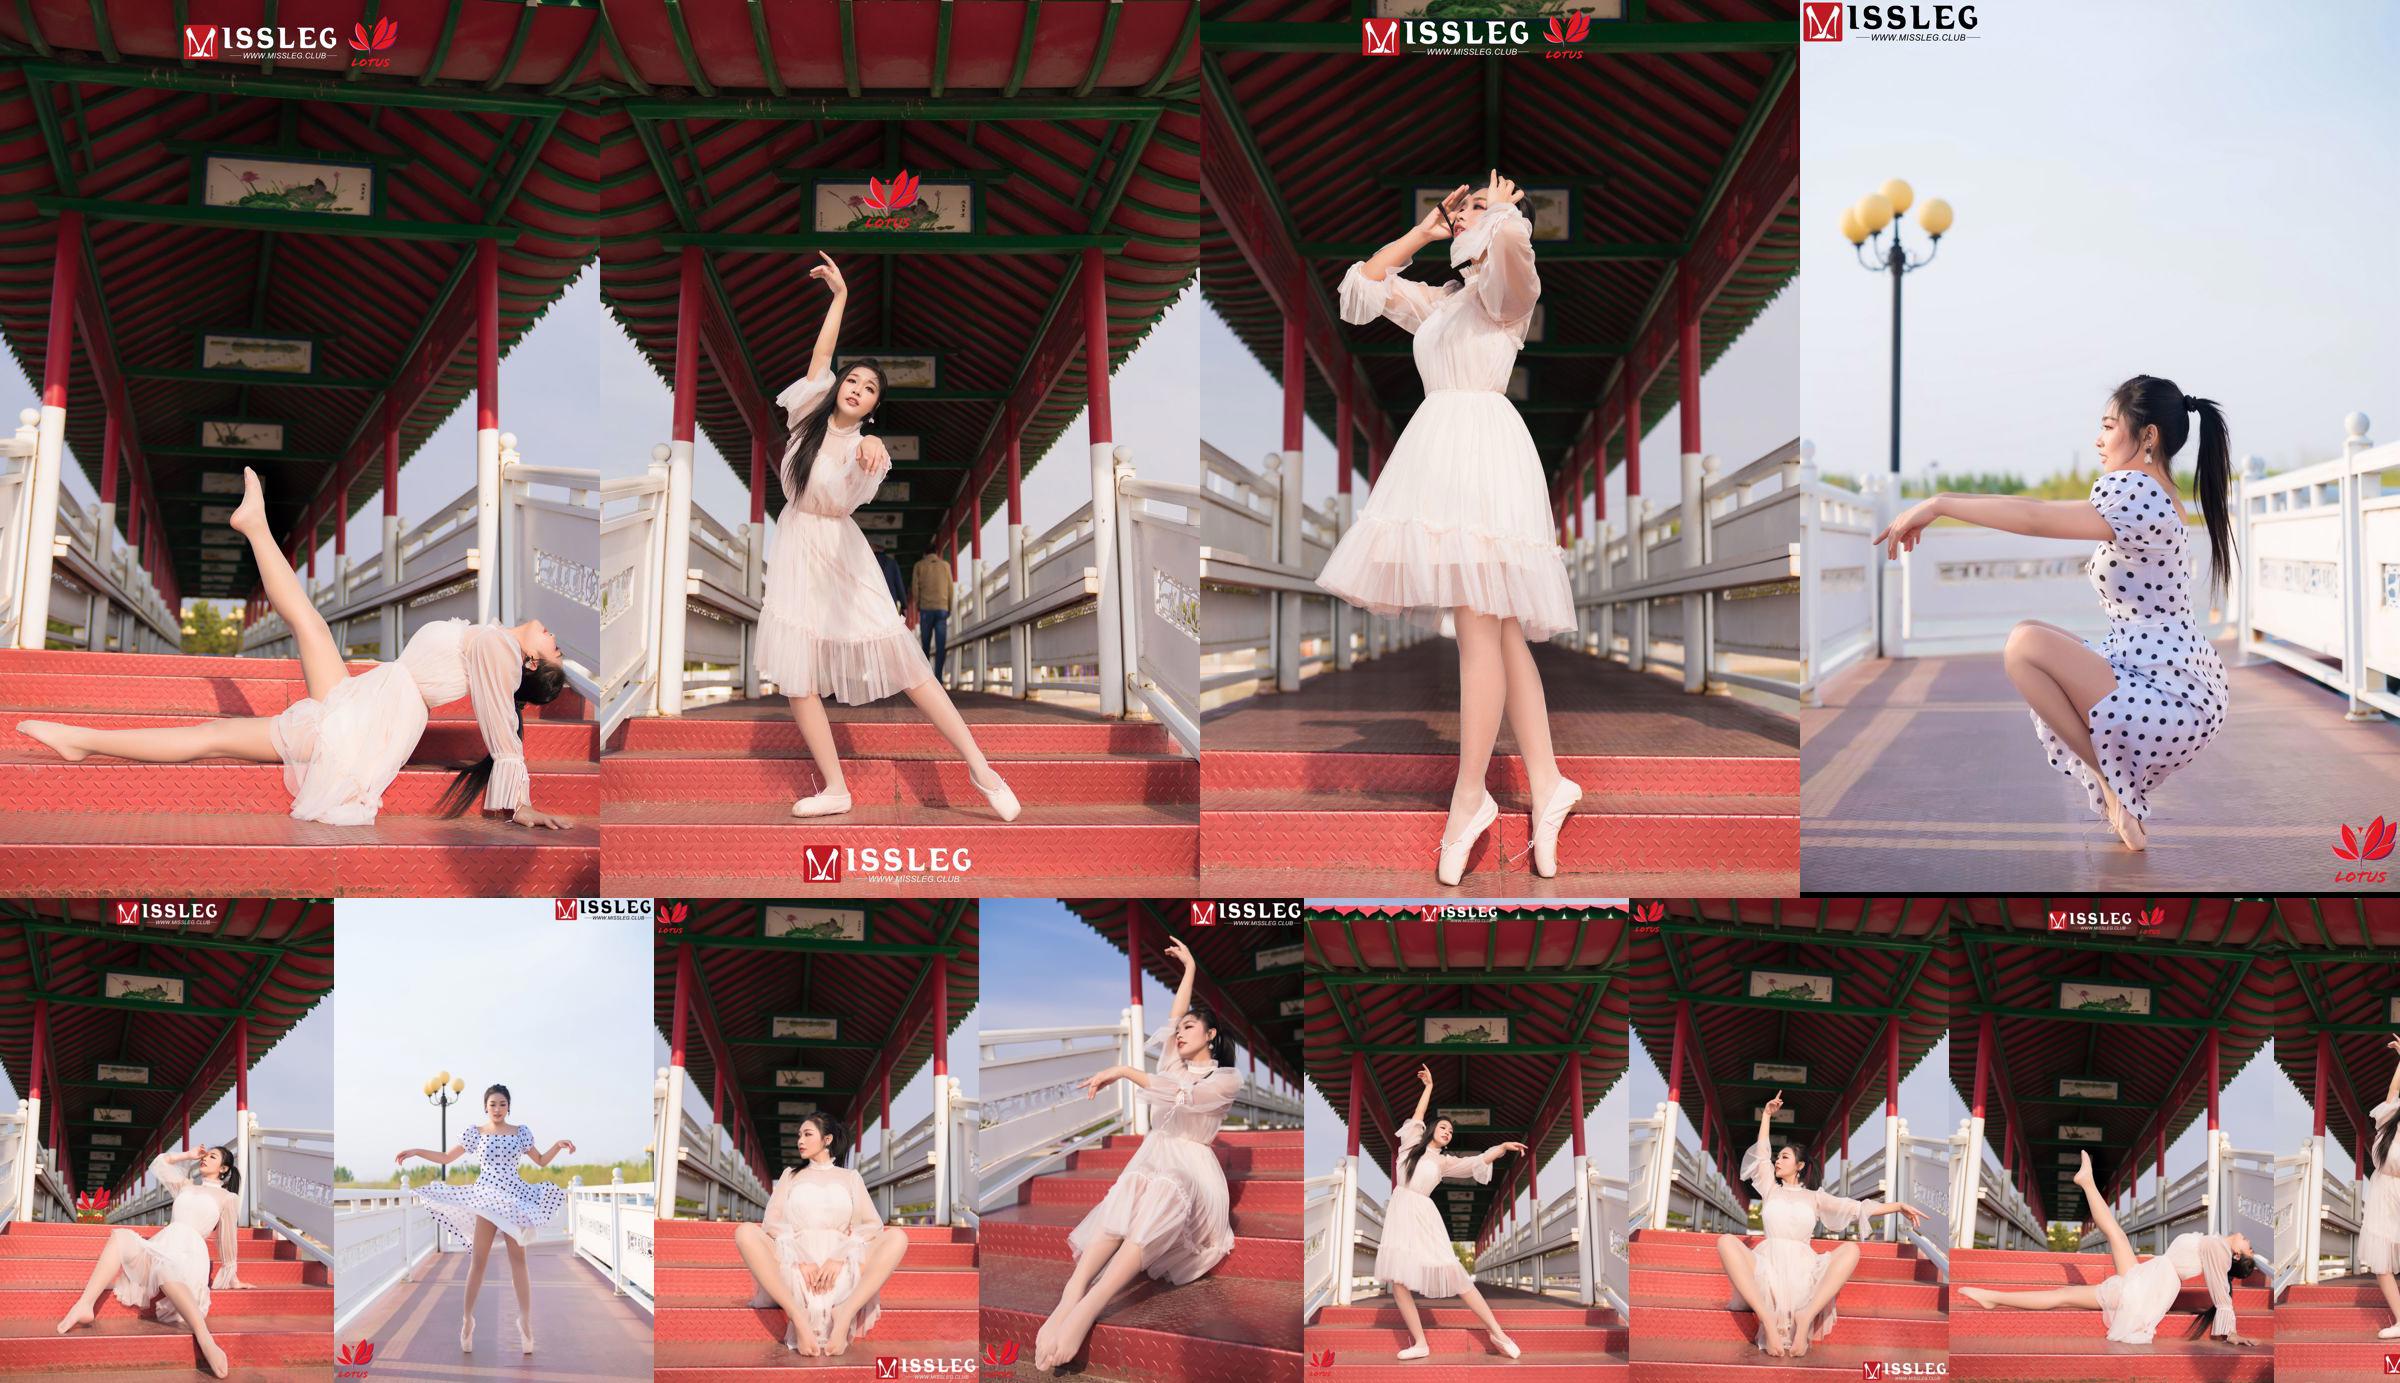 [蜜丝MISSLEG] M018 Imp 3 "Scenic Dancer" No.0caa5a Page 8